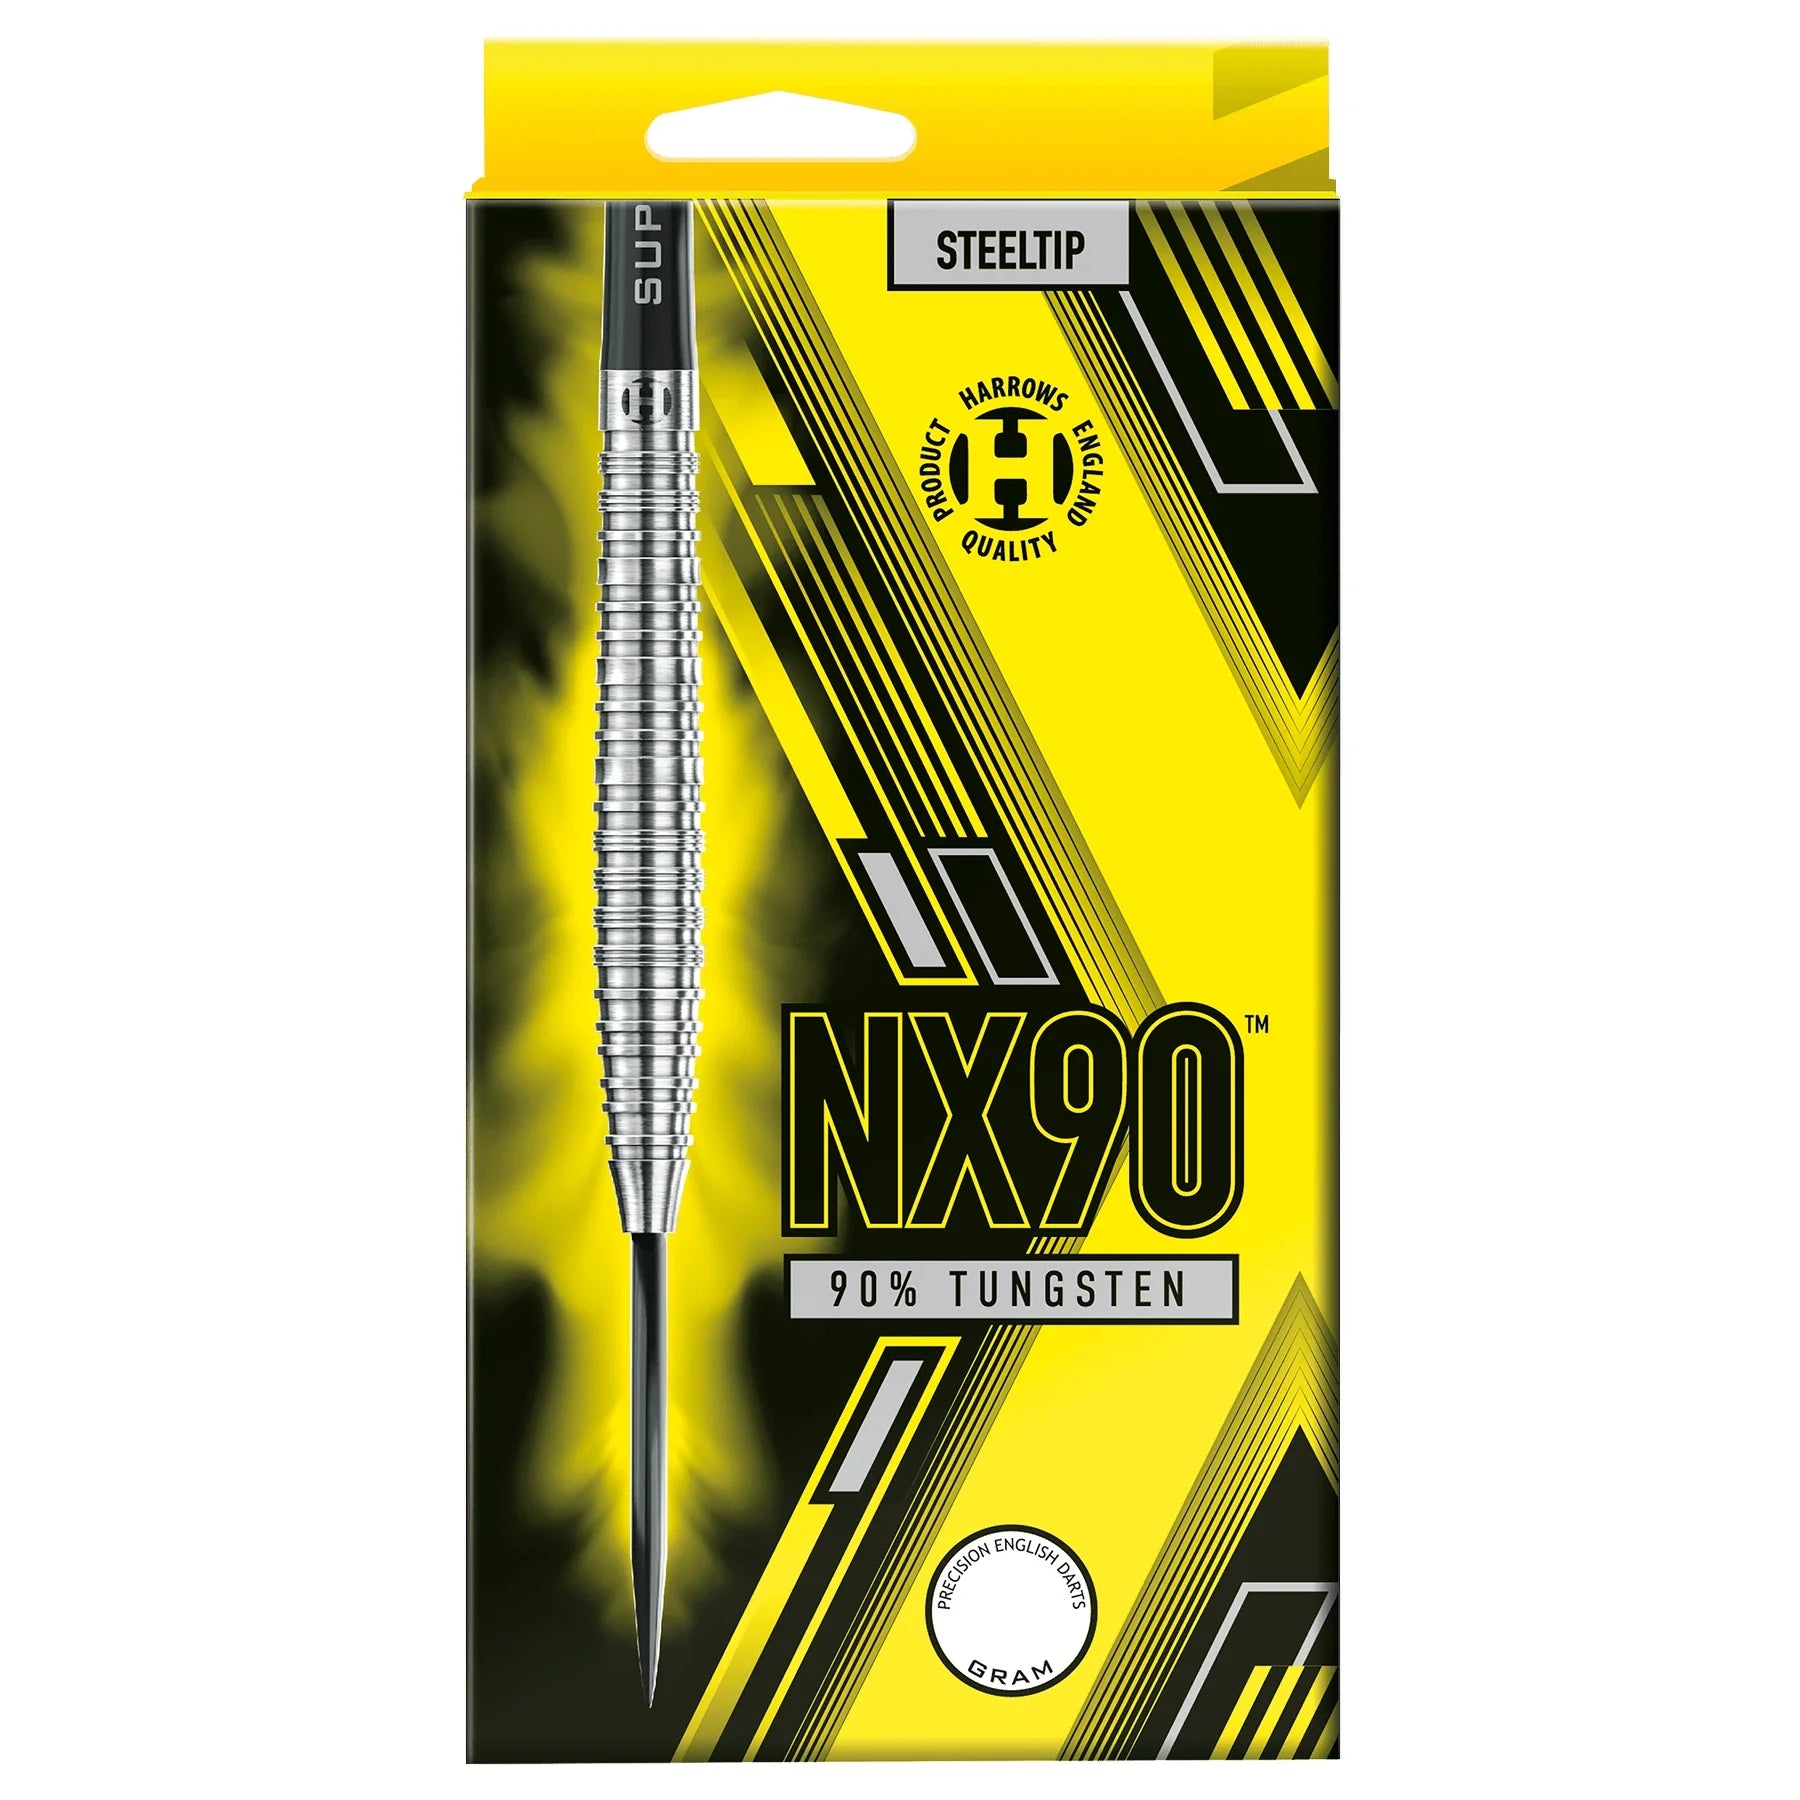 Harrows NX90 26g Darts